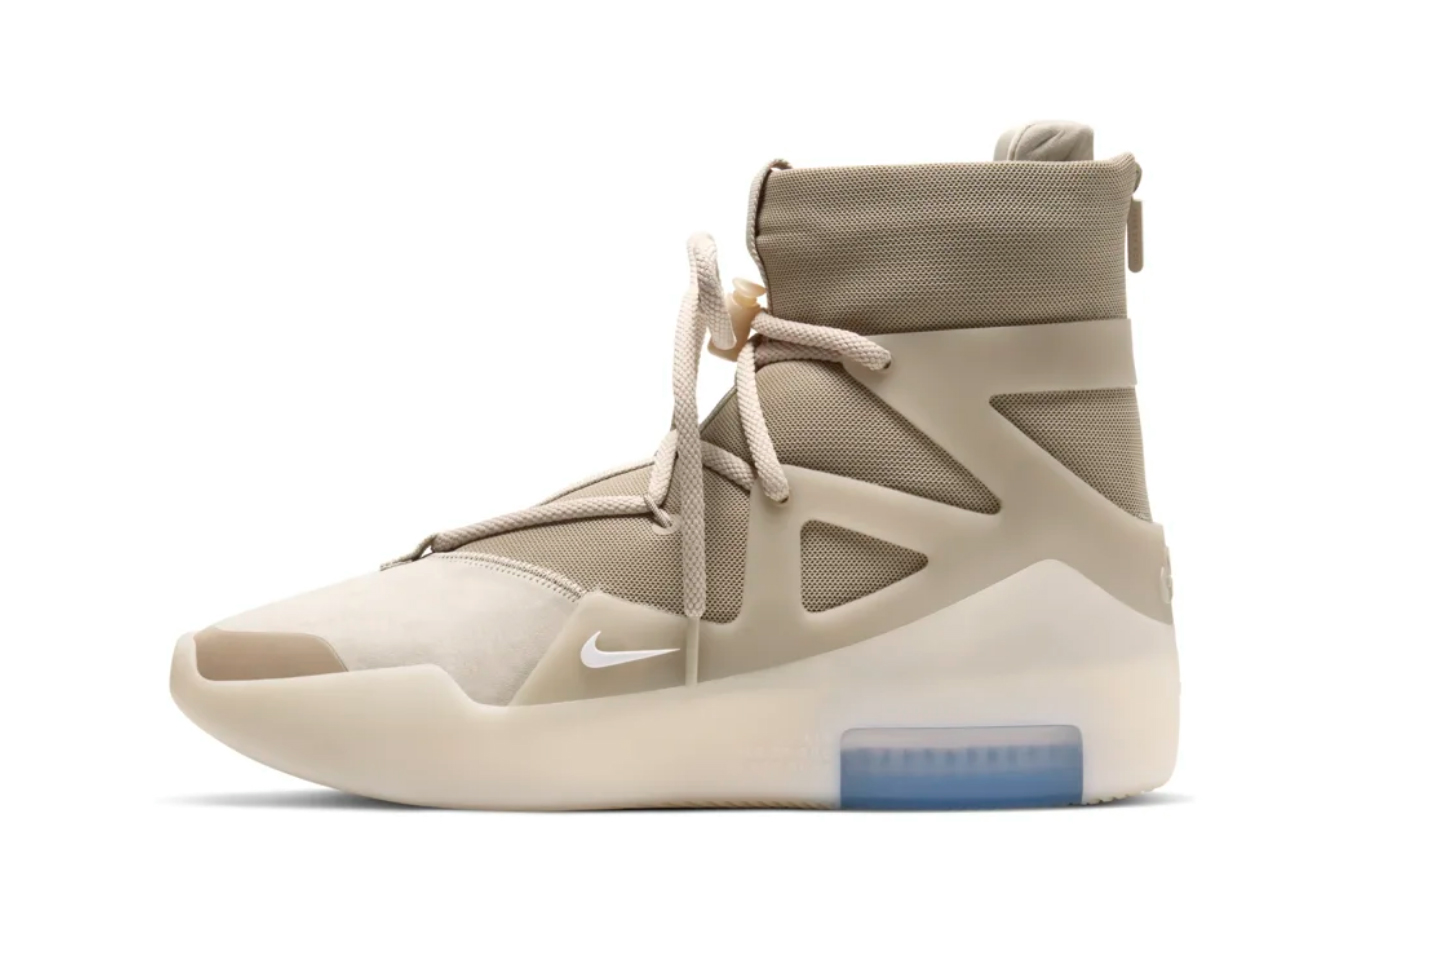 Nike Air Fear of God 1 “Oatmeal” Sneaker Release | HYPEBEAST DROPS